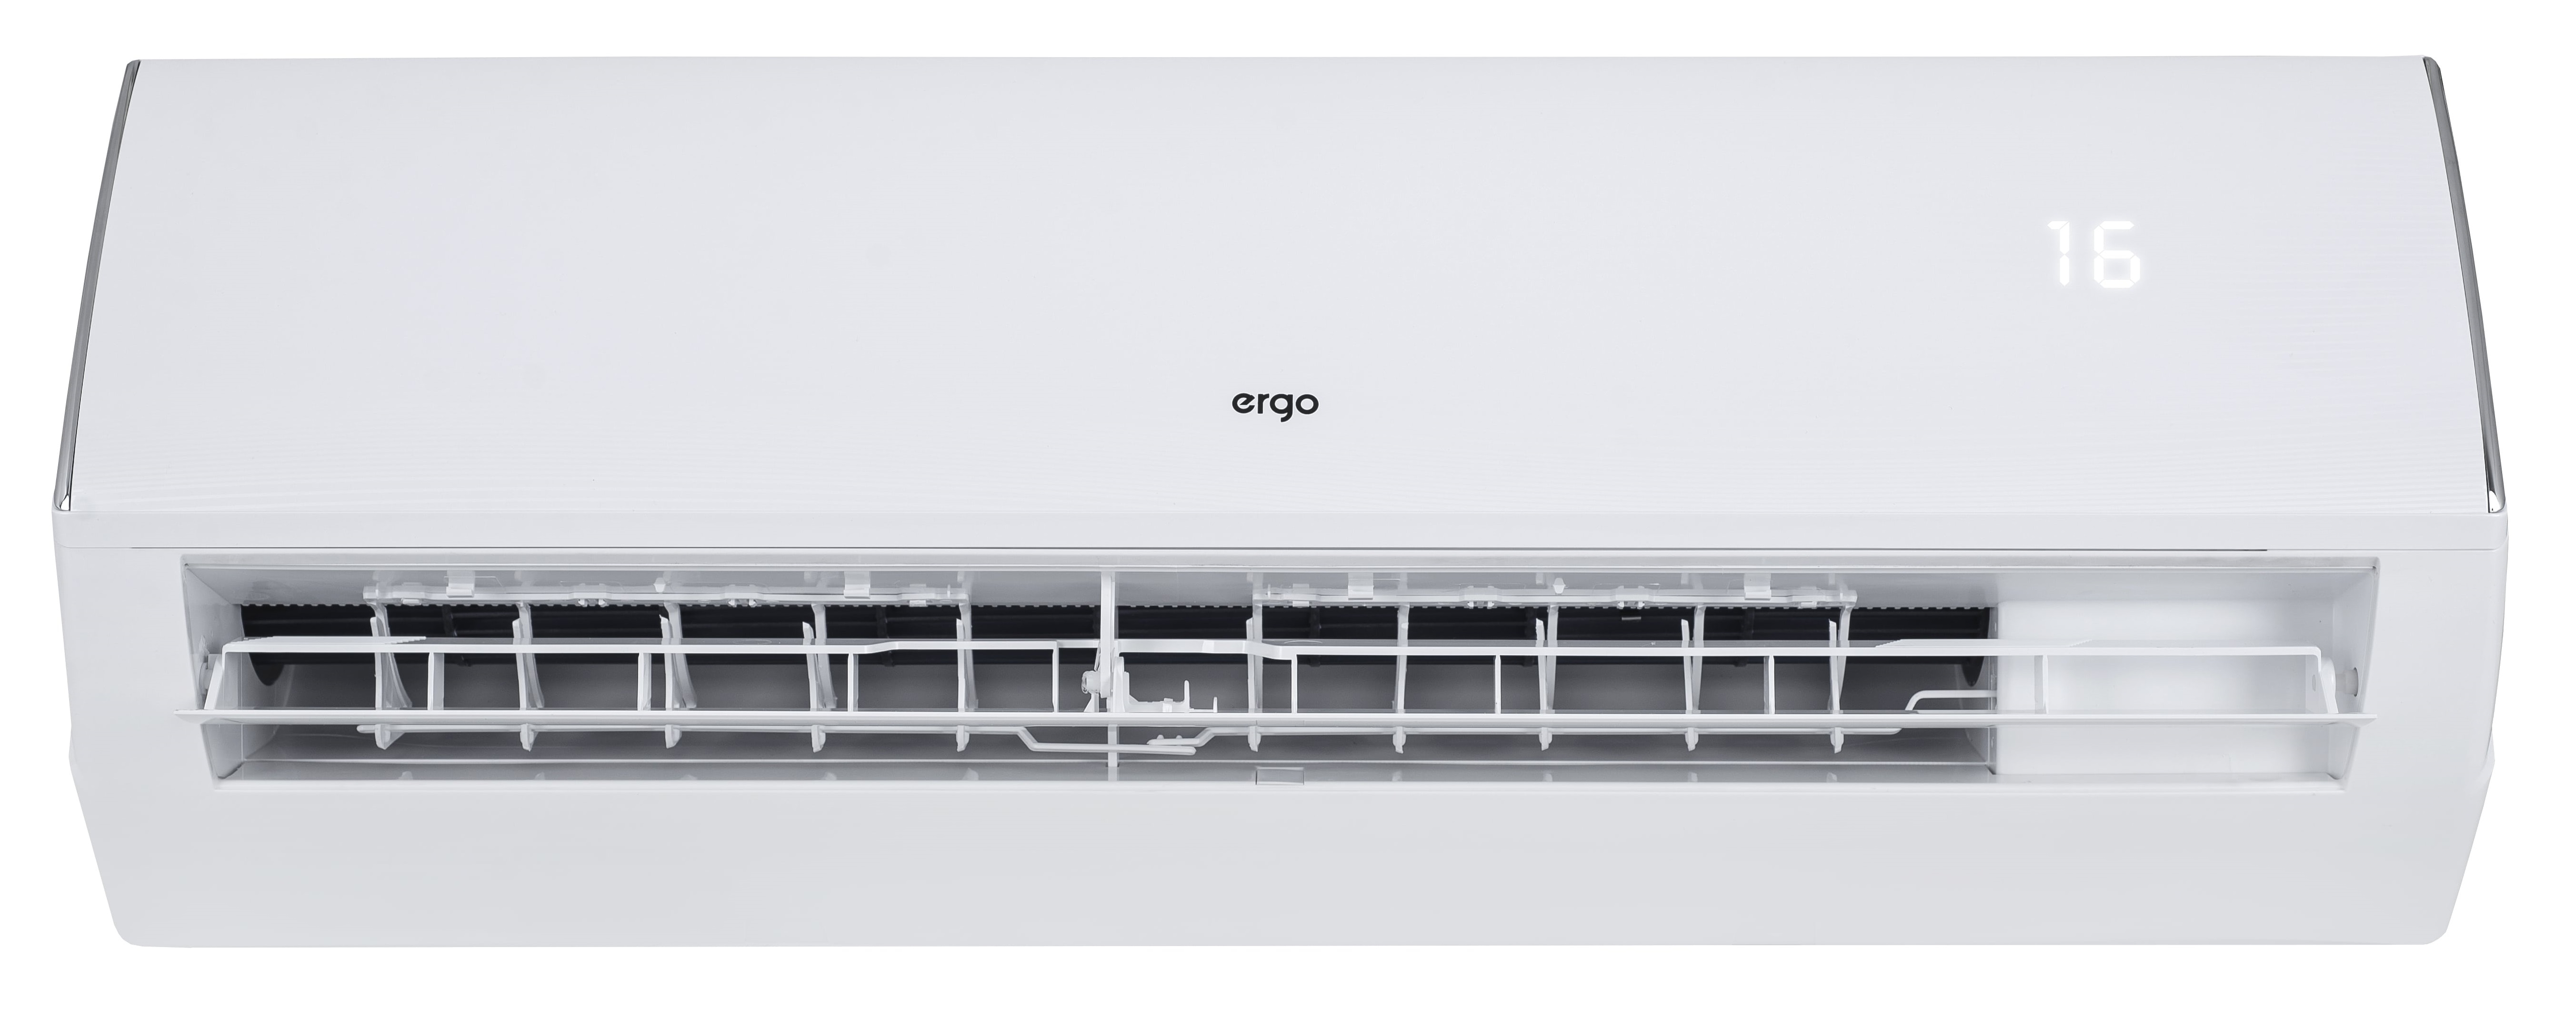 Кондиционер сплит-система Ergo ACI 0911 CH отзывы - изображения 5